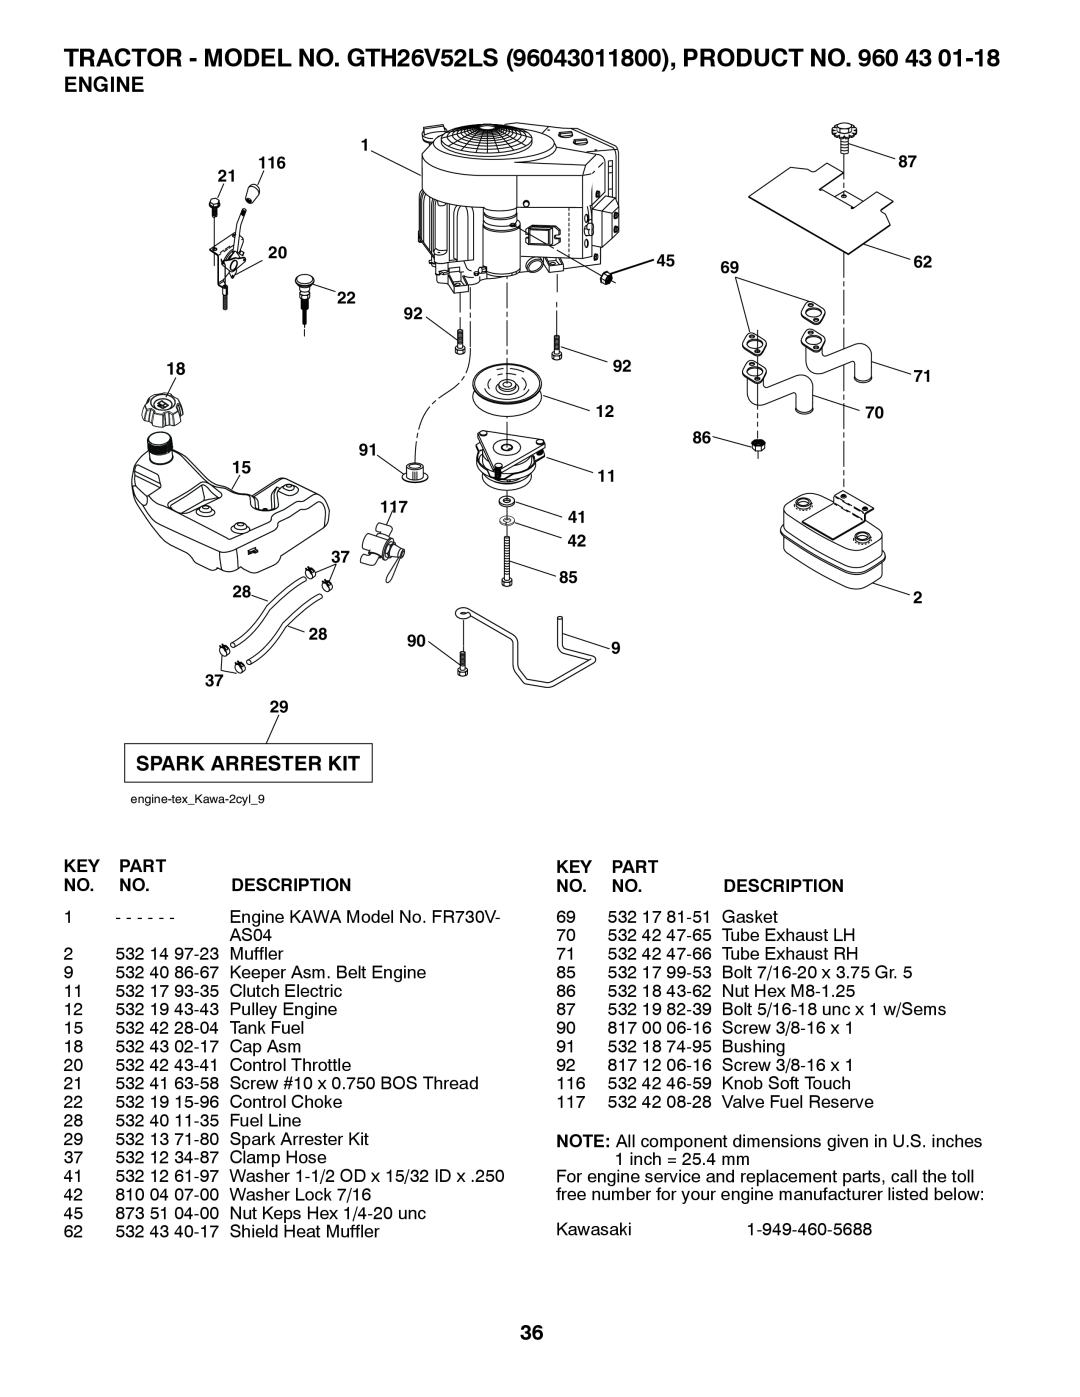 Husqvarna owner manual Engine, TRACTOR - MODEL NO. GTH26V52LS 96043011800, PRODUCT NO. 960, Part, Description 